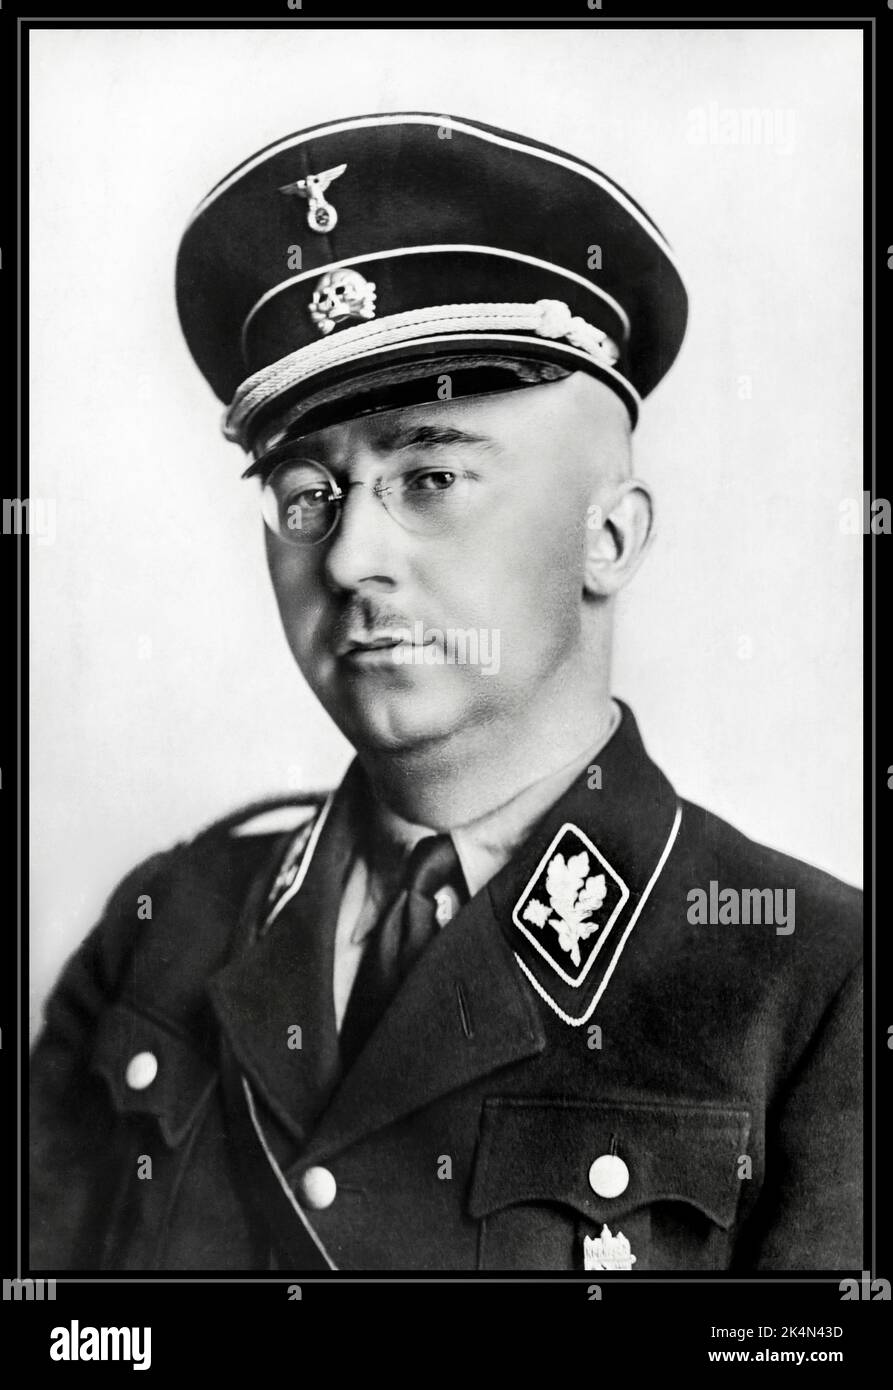 HIMMLER Offizielles Porträt in SS-Uniform. 1938 Heinrich Luitpold Himmler war Reichsführer der Schutzstaffel und ein führendes Mitglied der NSDAP. Himmler war einer der mächtigsten Männer in Nazi-Deutschland und ein Hauptarchitekt des Holocaust.1940er Jahre WW2 Heinrich Deutscher nationalsozialistischer Politiker Nazi-Militärkommandant Geheimpolizei. Erleichterte Völkermord in ganz Europa und im Osten. Beging Selbstmord im Jahr 1945 Stockfoto